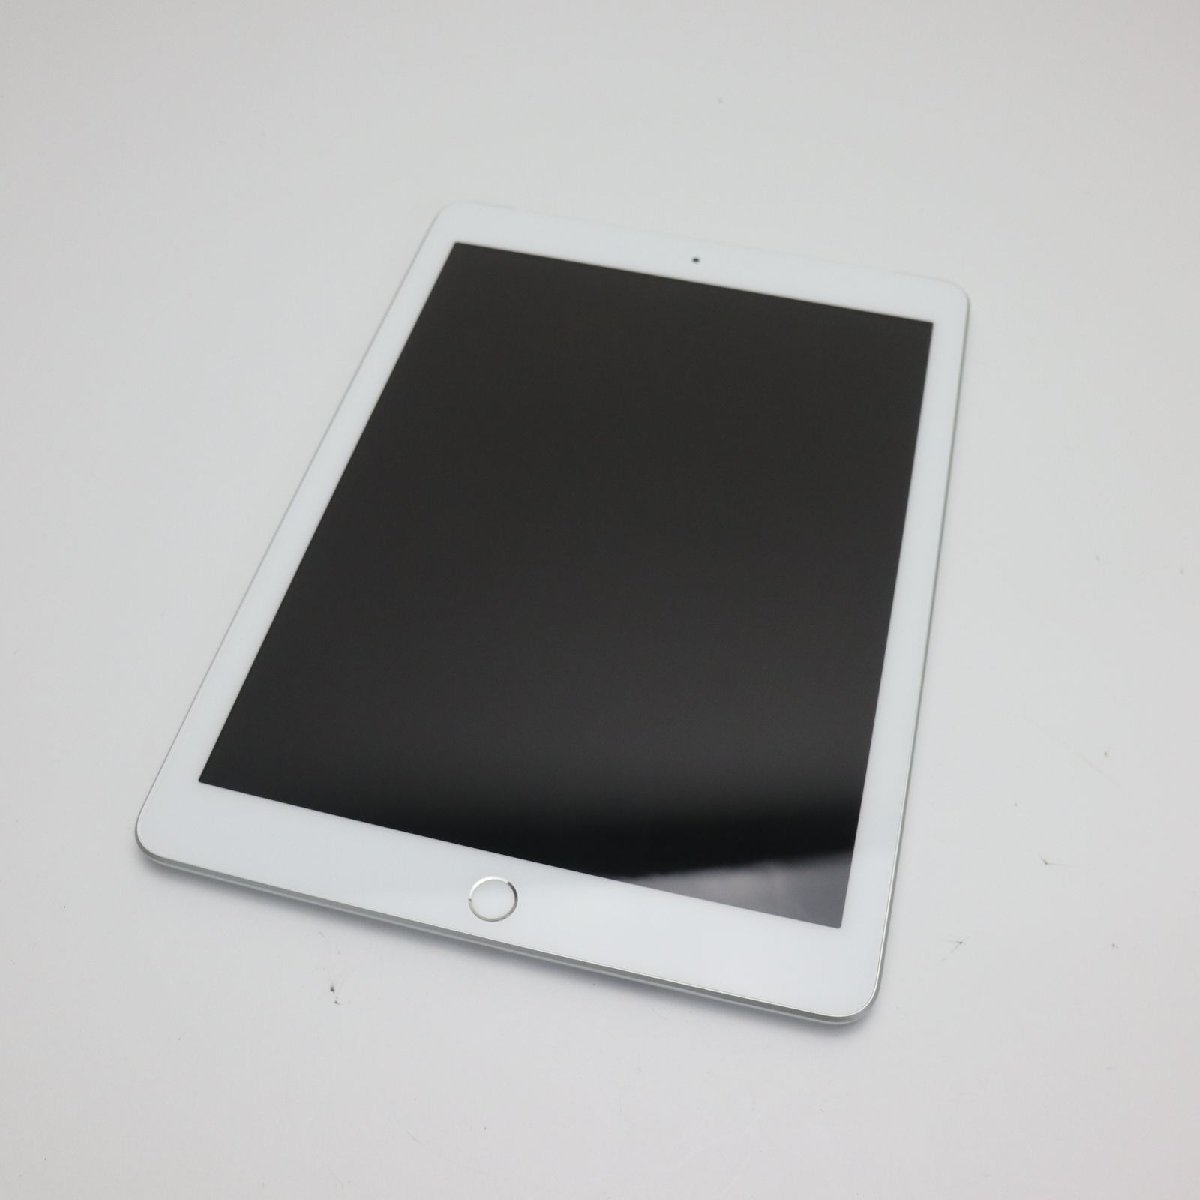 【激安アウトレット!】 超美品 SIMフリー iPad 第6世代 32GB シルバー タブレット 白ロム 中古 即日発送 Apple あすつく 土日祝発送OK iPad本体